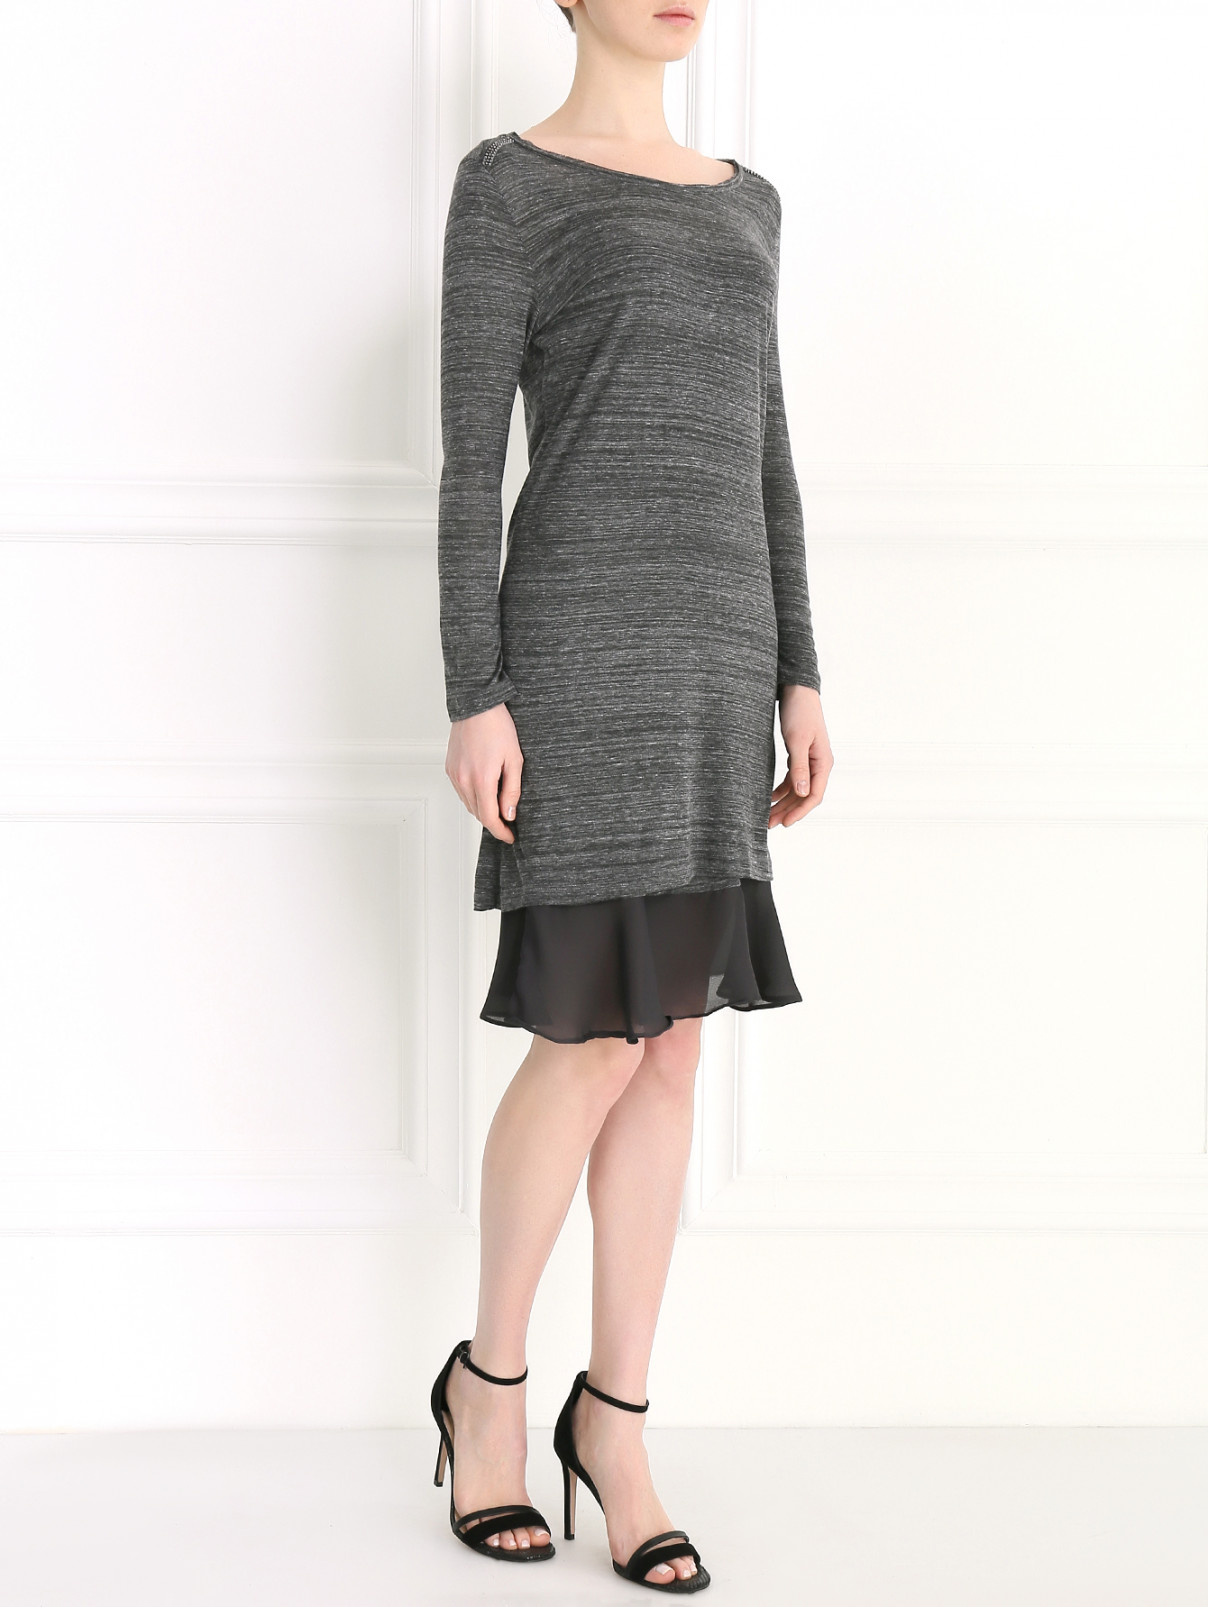 Трикотажное платье-мини с контрастной отделкой Rich&Royal  –  Модель Общий вид  – Цвет:  Серый